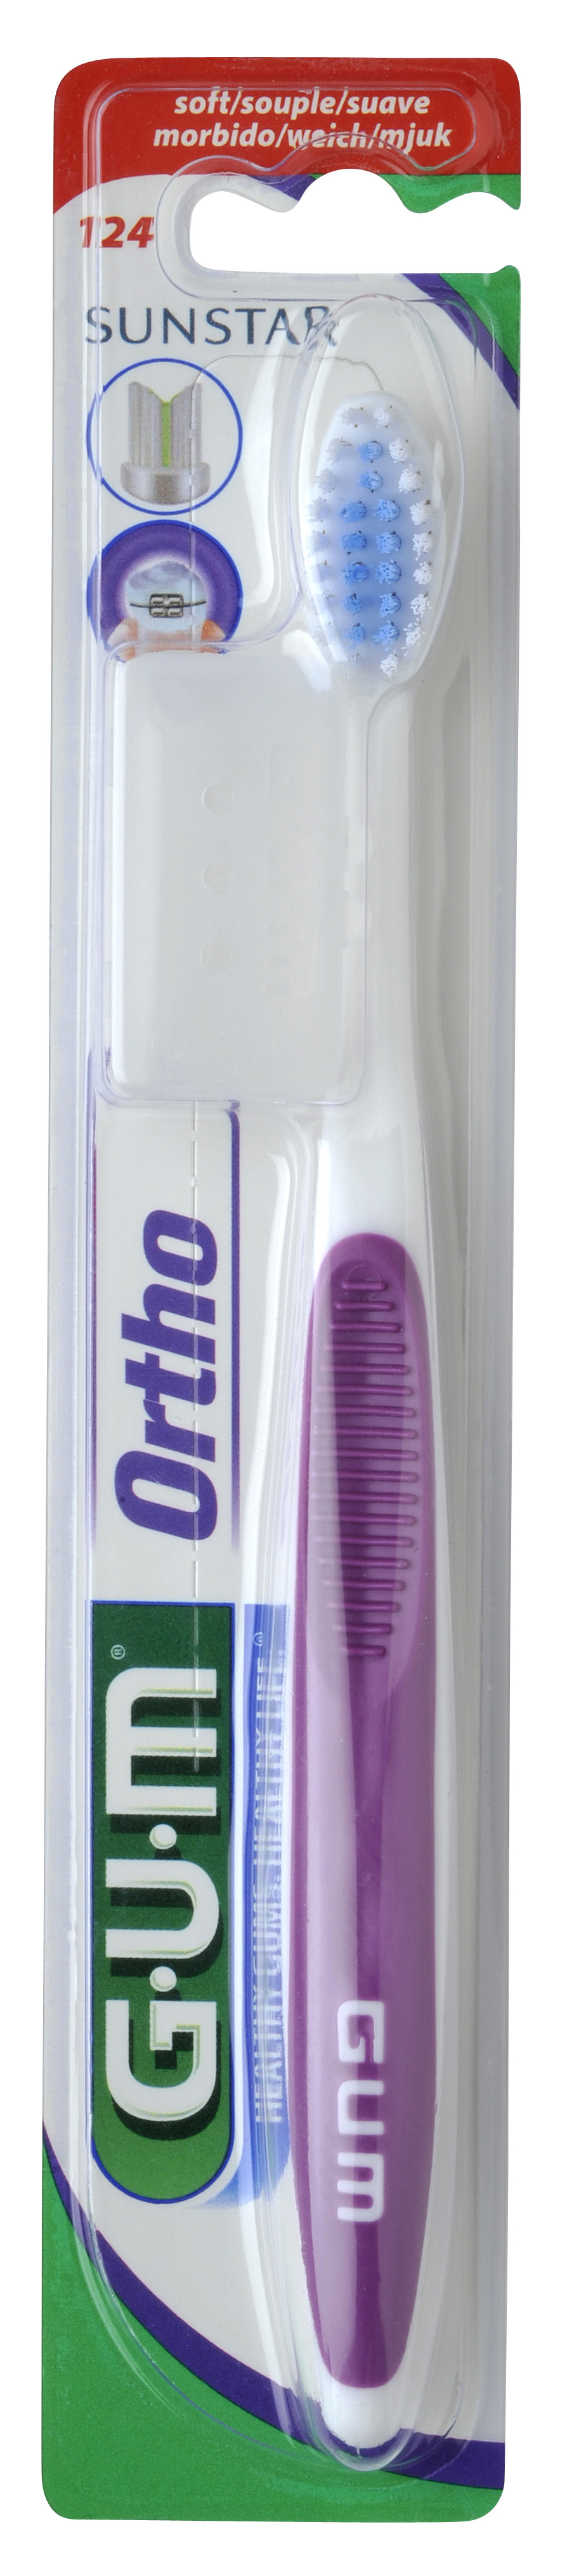 124 G·U·M Orthodontic Toothbrush with Cap (แปรงสีฟันสำหรับผู้จัดฟันพร้อมฝาครอบ)